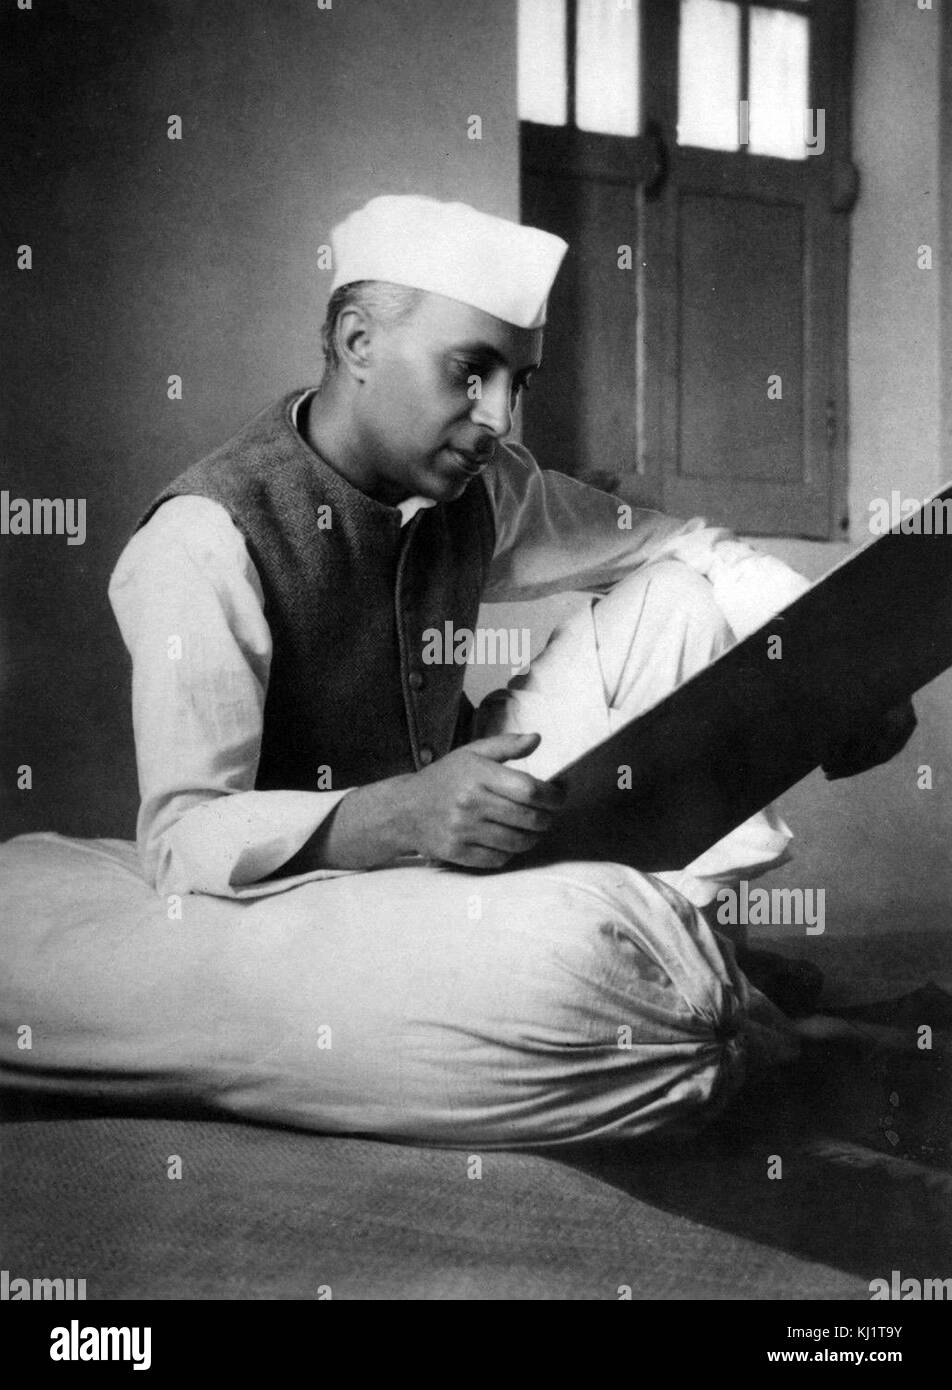 Jawaharlal Nehru (1889 -1964) Primo Ministro dell'India e una figura centrale nella politica indiana prima e dopo l'indipendenza. leader dell'Indiano movimento di indipendenza sotto la tutela del Mahatma Gandhi e governarono l India dalla sua creazione come una nazione indipendente nel 1947 fino alla sua morte nel 1964. Foto Stock